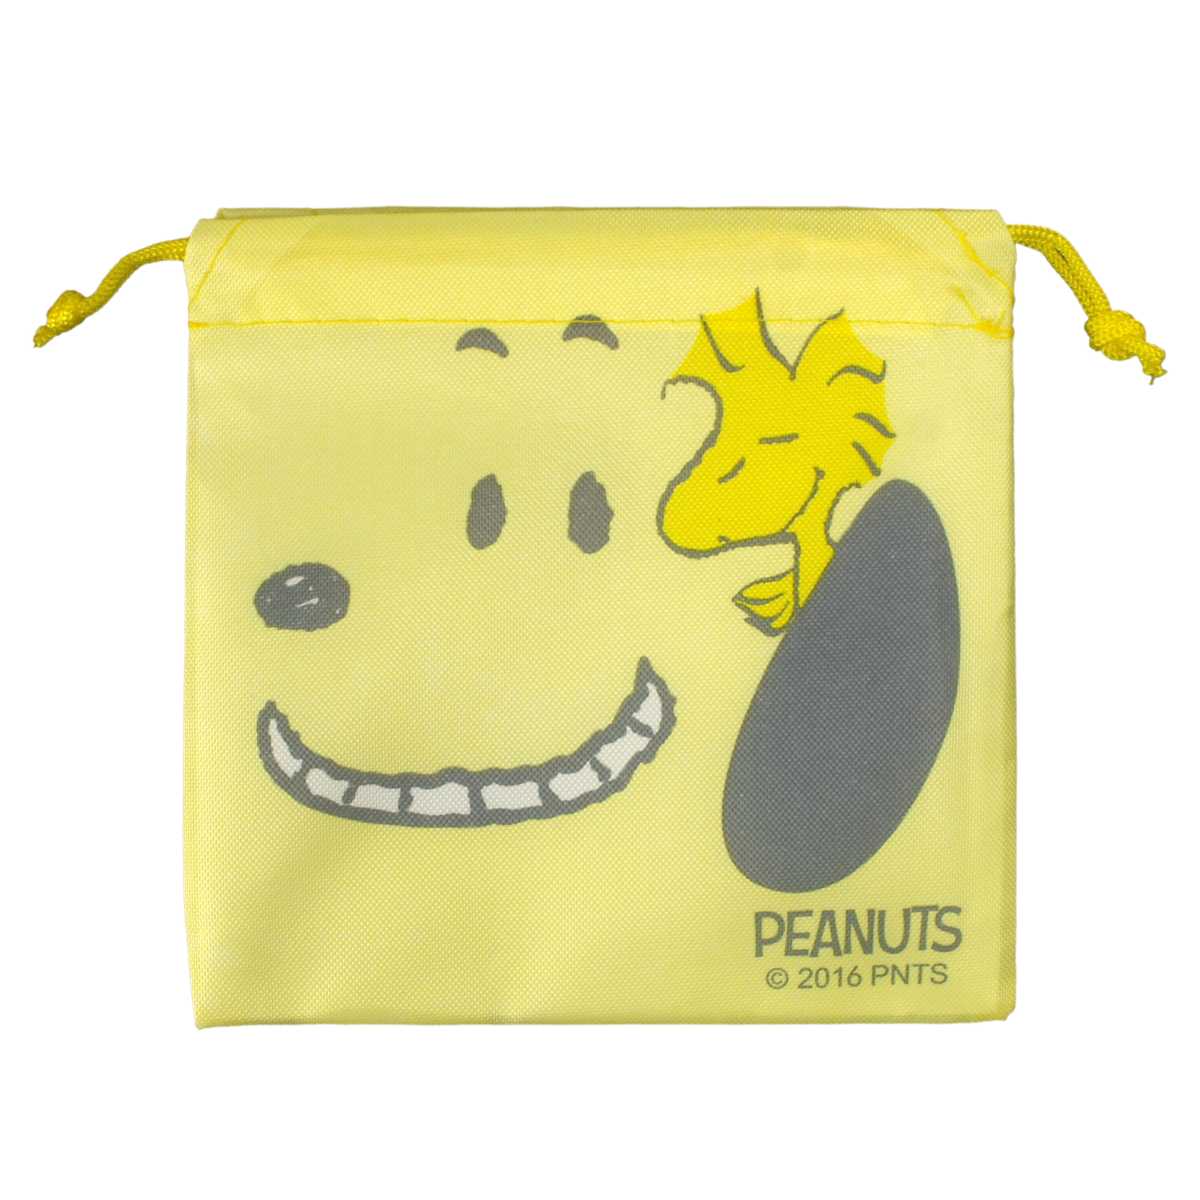 楽天市場 小物 スヌーピー Snoopy Peanuts ミニ巾着 コップ袋 化粧 ポーチ 巾着 小物 入れ 男の子 女の子 スヌーピー E柄 15x15サイズ ガールズ キッズ 小物 全8色 ピアニッシモ